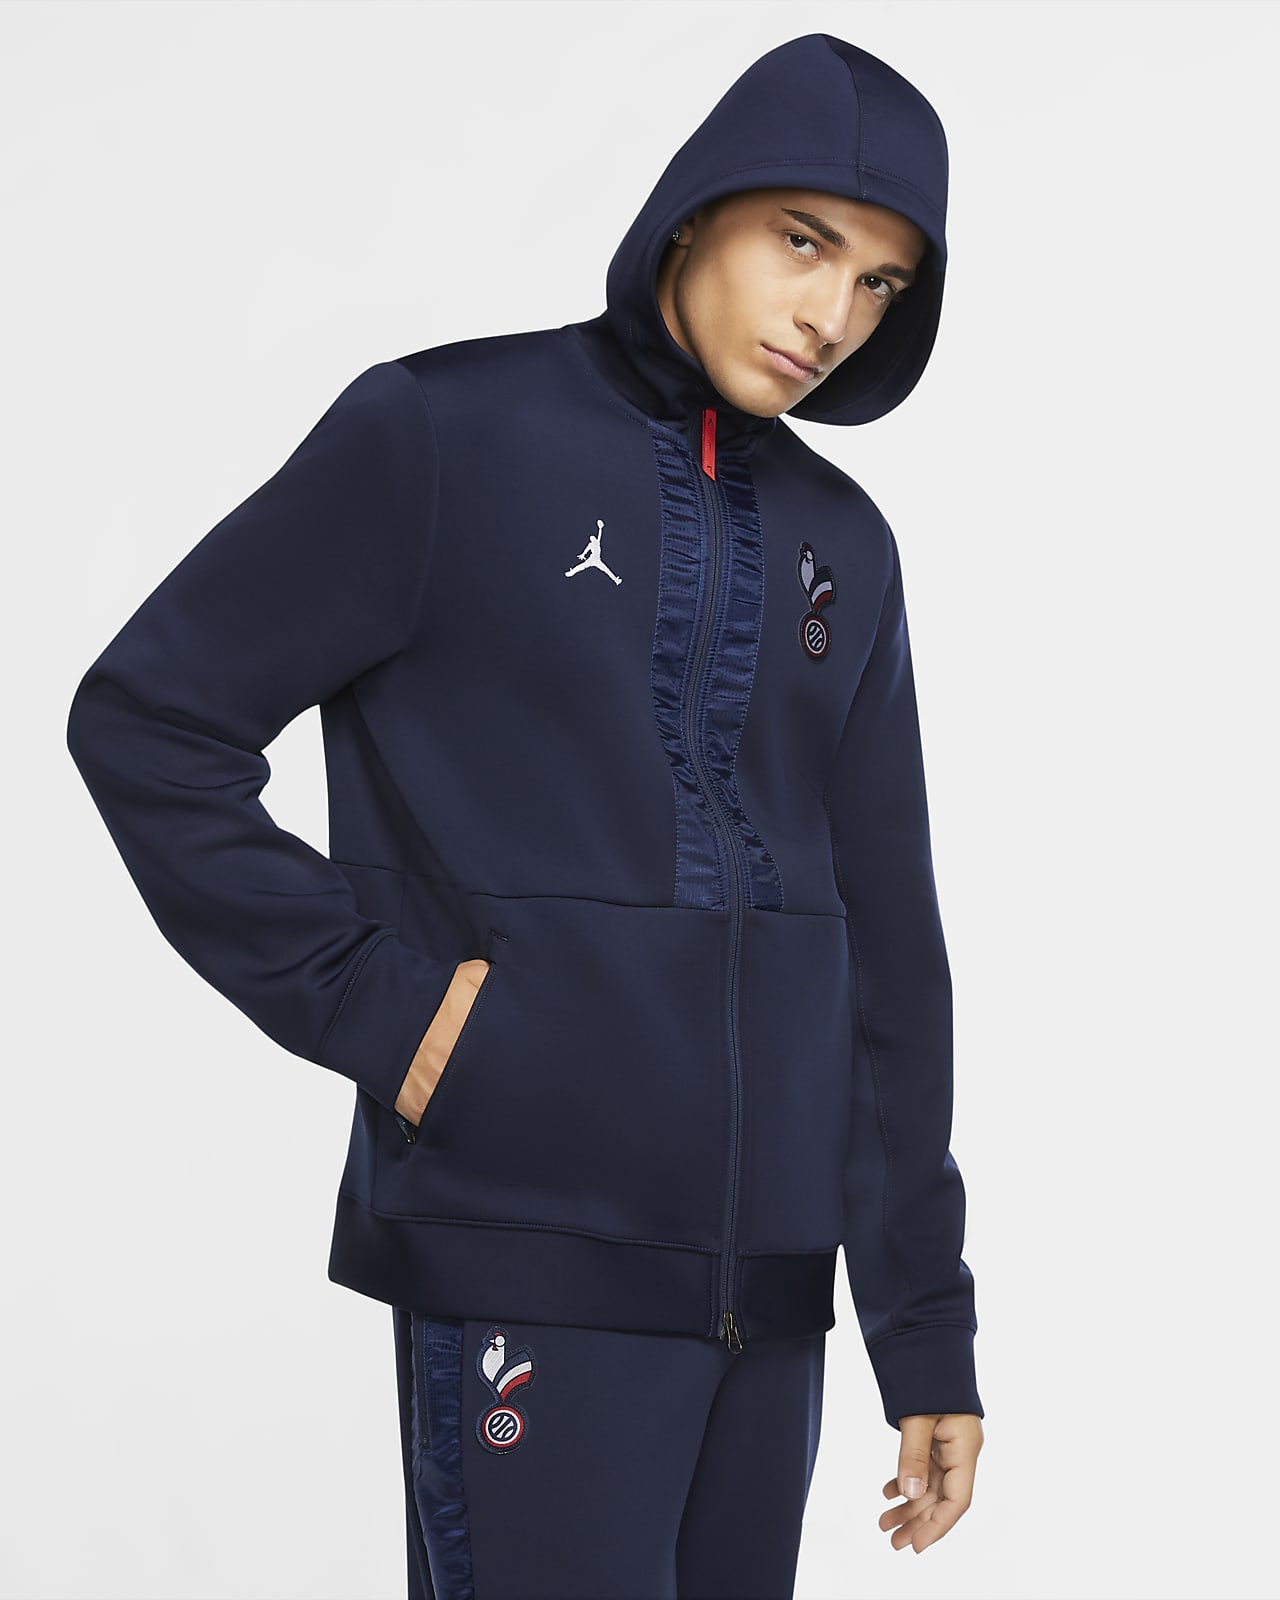 Plys dukke Terapi sympati France Jordan Men's Game Jacket. Nike.com